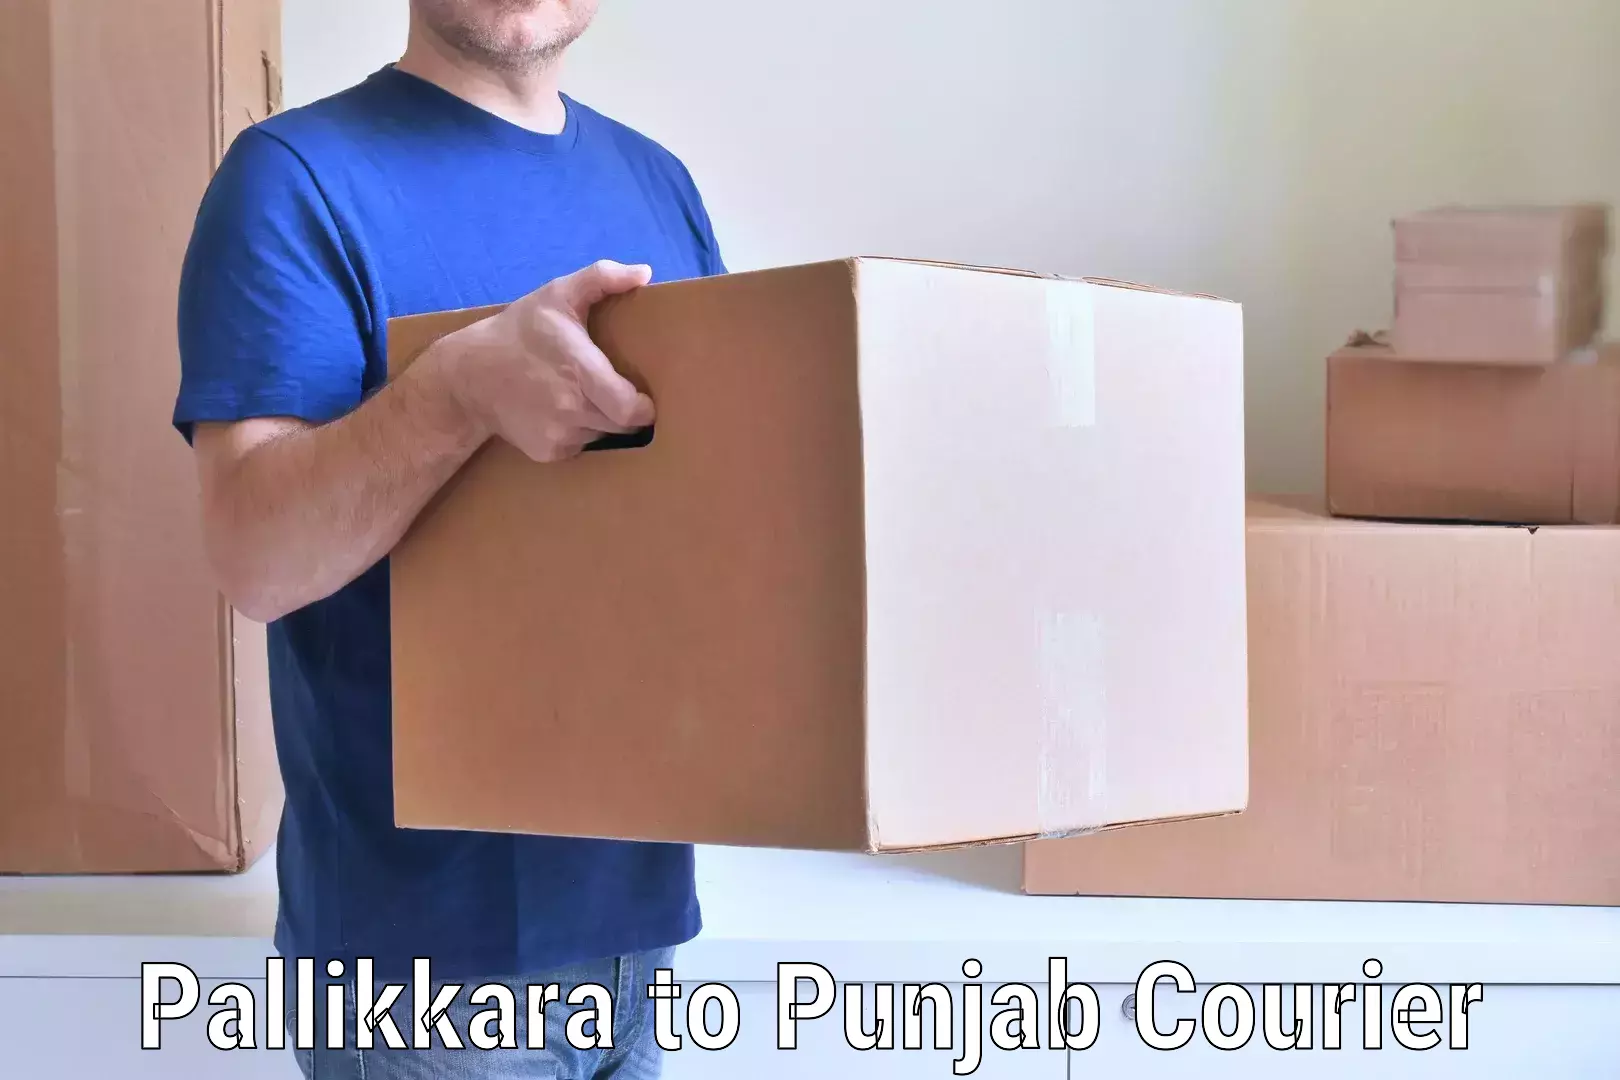 Easy furniture transport Pallikkara to Dhuri